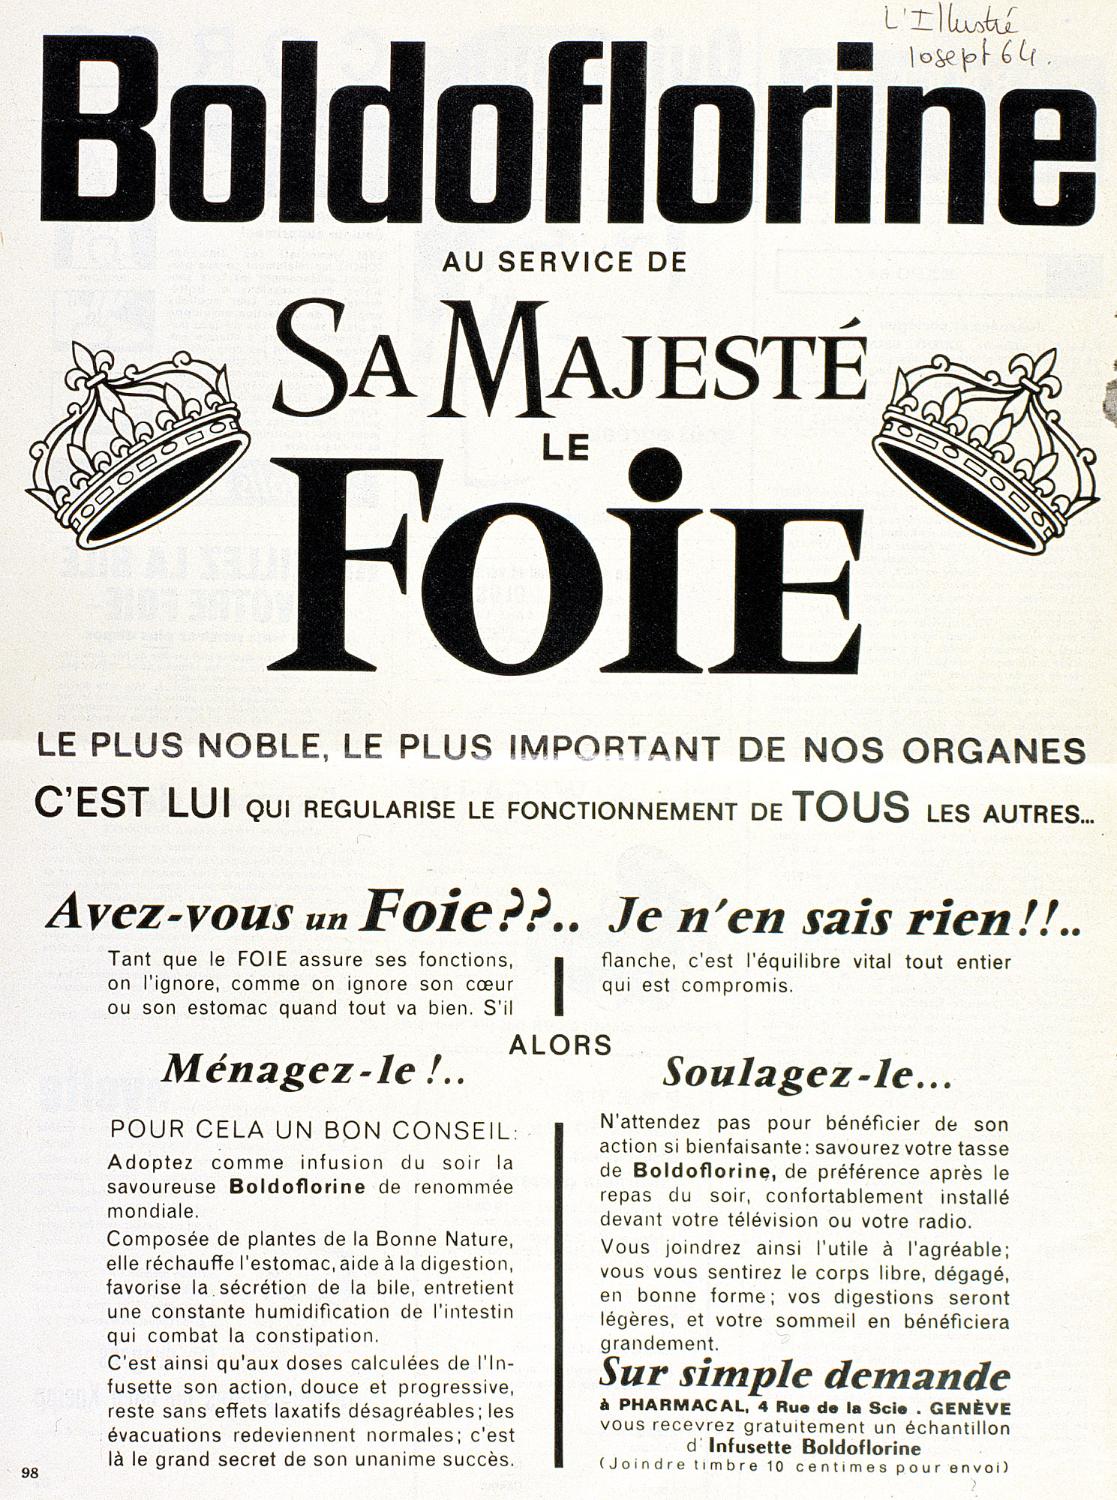 affiches, documents publicitaires divers et emballages pour les tisanes Boldoflorine, Calmiflorine et Saliflorine